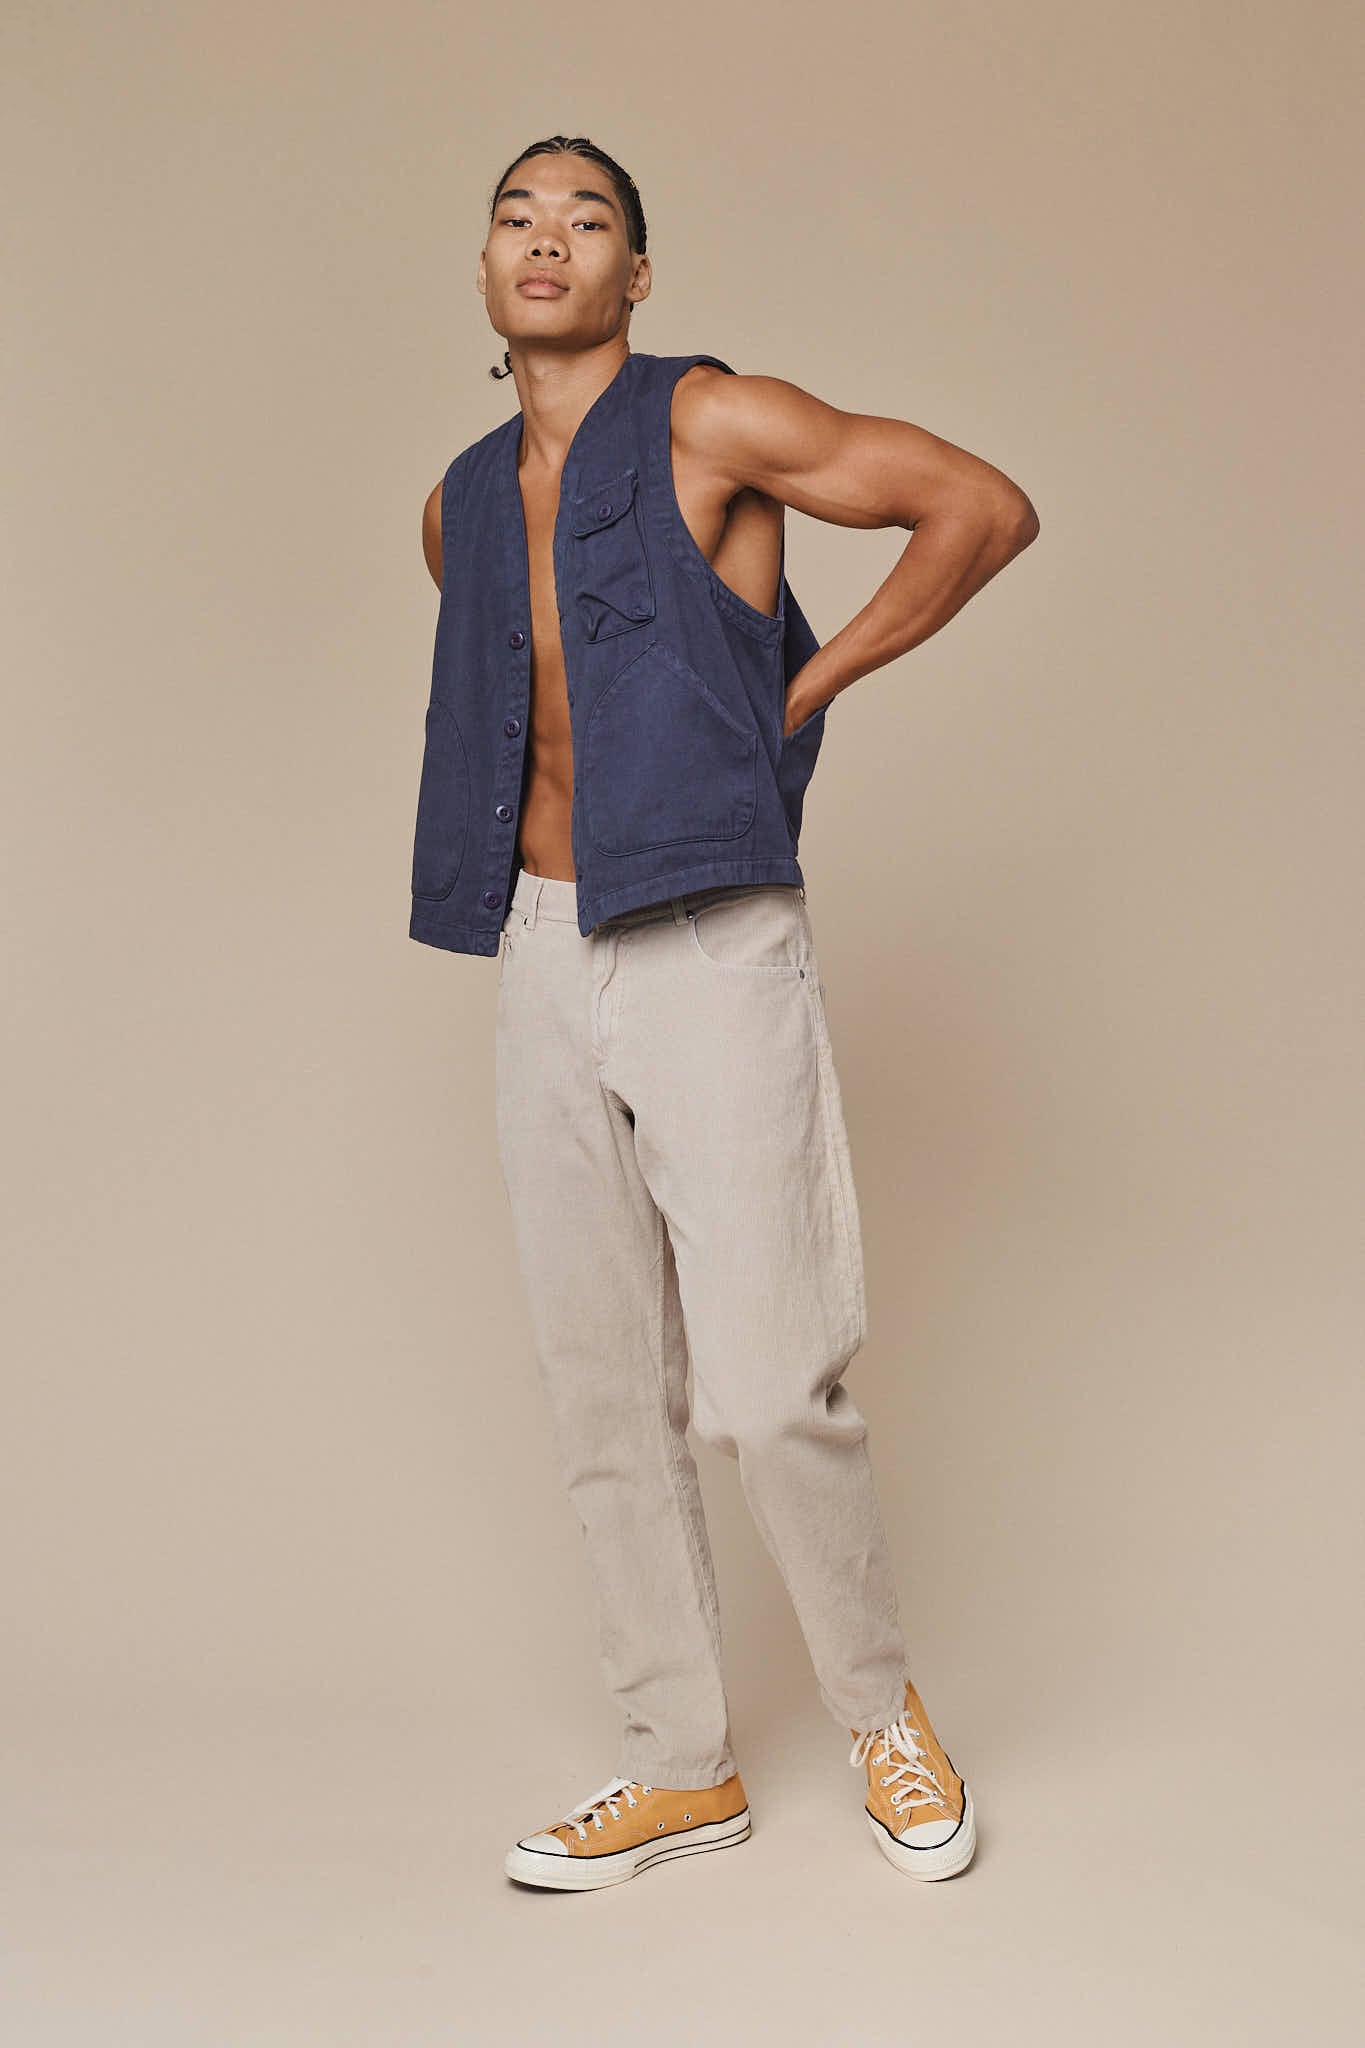 Falcon Vest | Jungmaven Hemp Clothing & Accessories / model_desc: Chaz is 6’2” wearing M